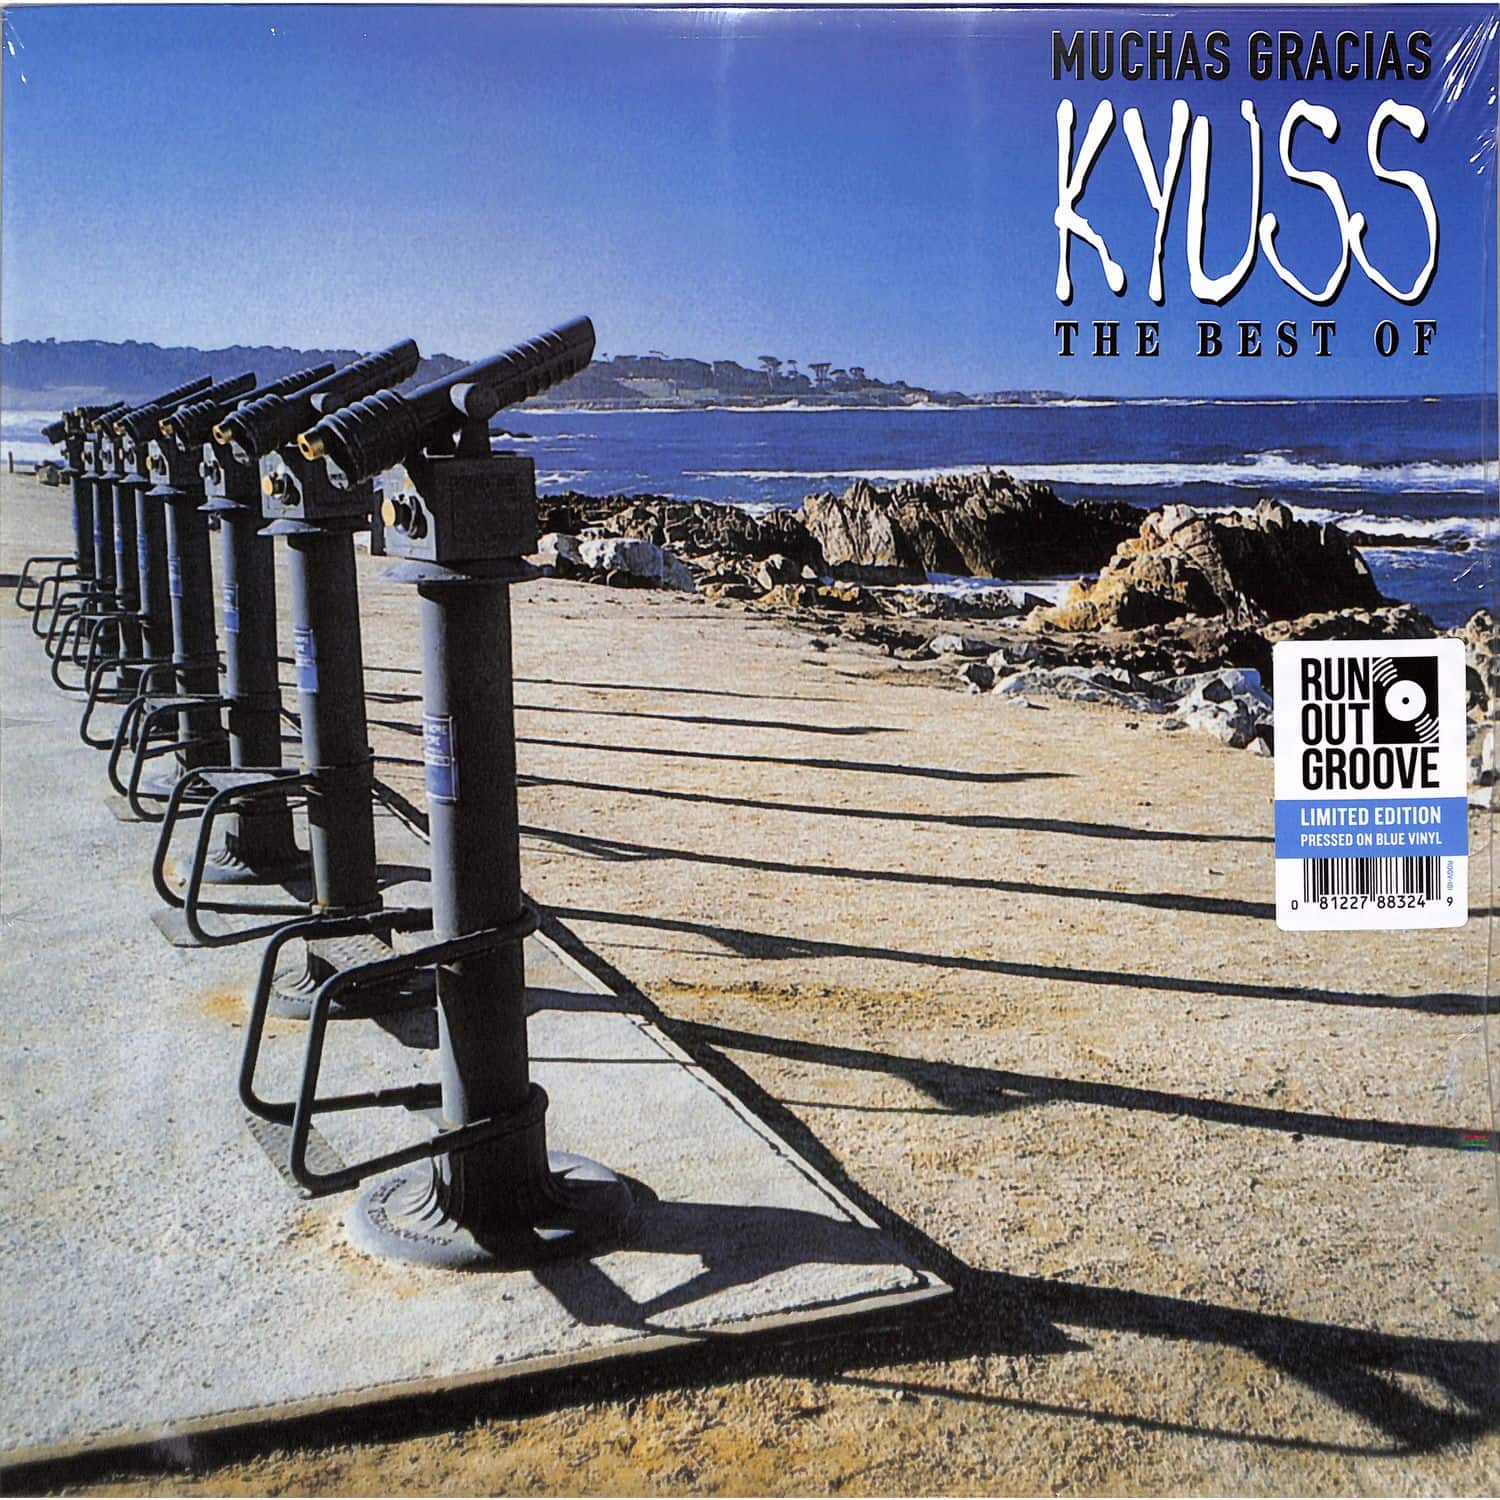 Kyuss - MUCHAS GRACIAS:THE BEST OF KYUSS 